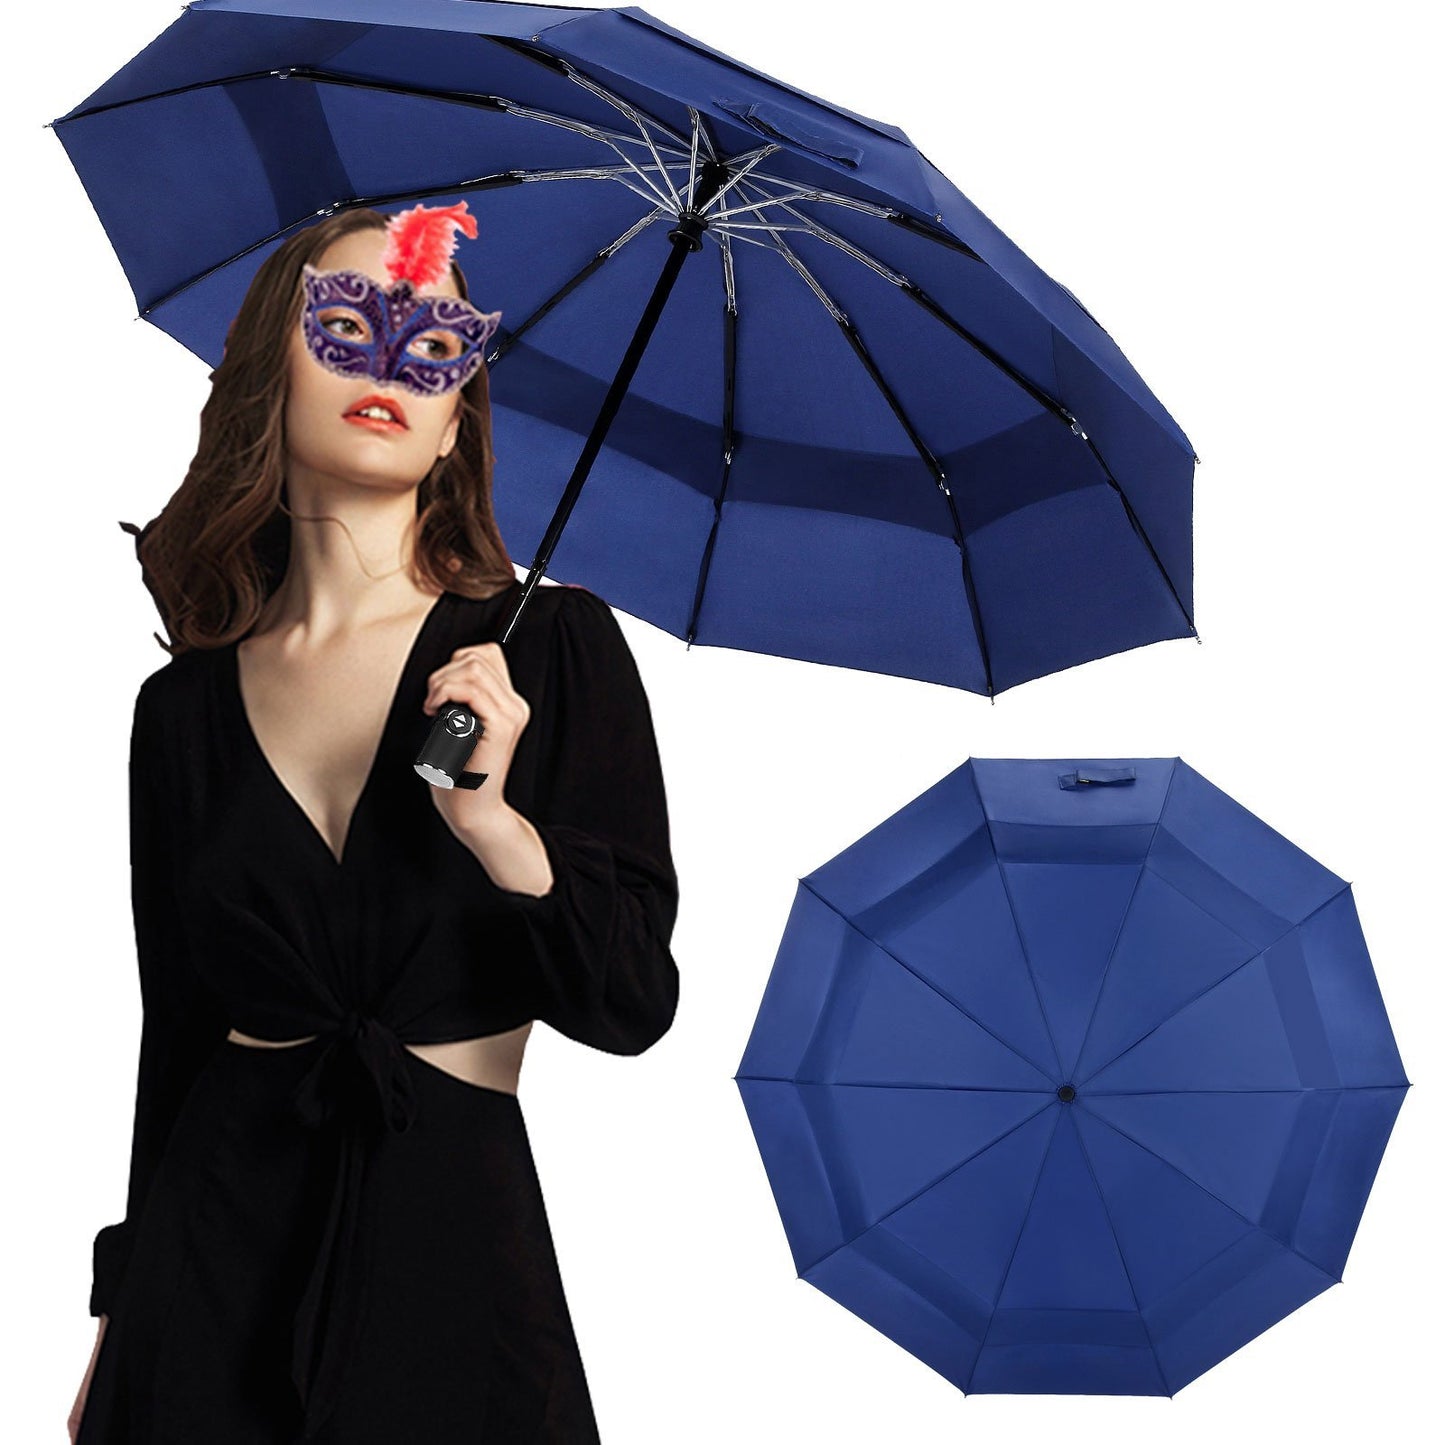 Umbrella Windproof Travel Umbrella, Vented Folding Umbrella, Compact Double Canopy Auto Open Close 10 ribs - Navy Blue